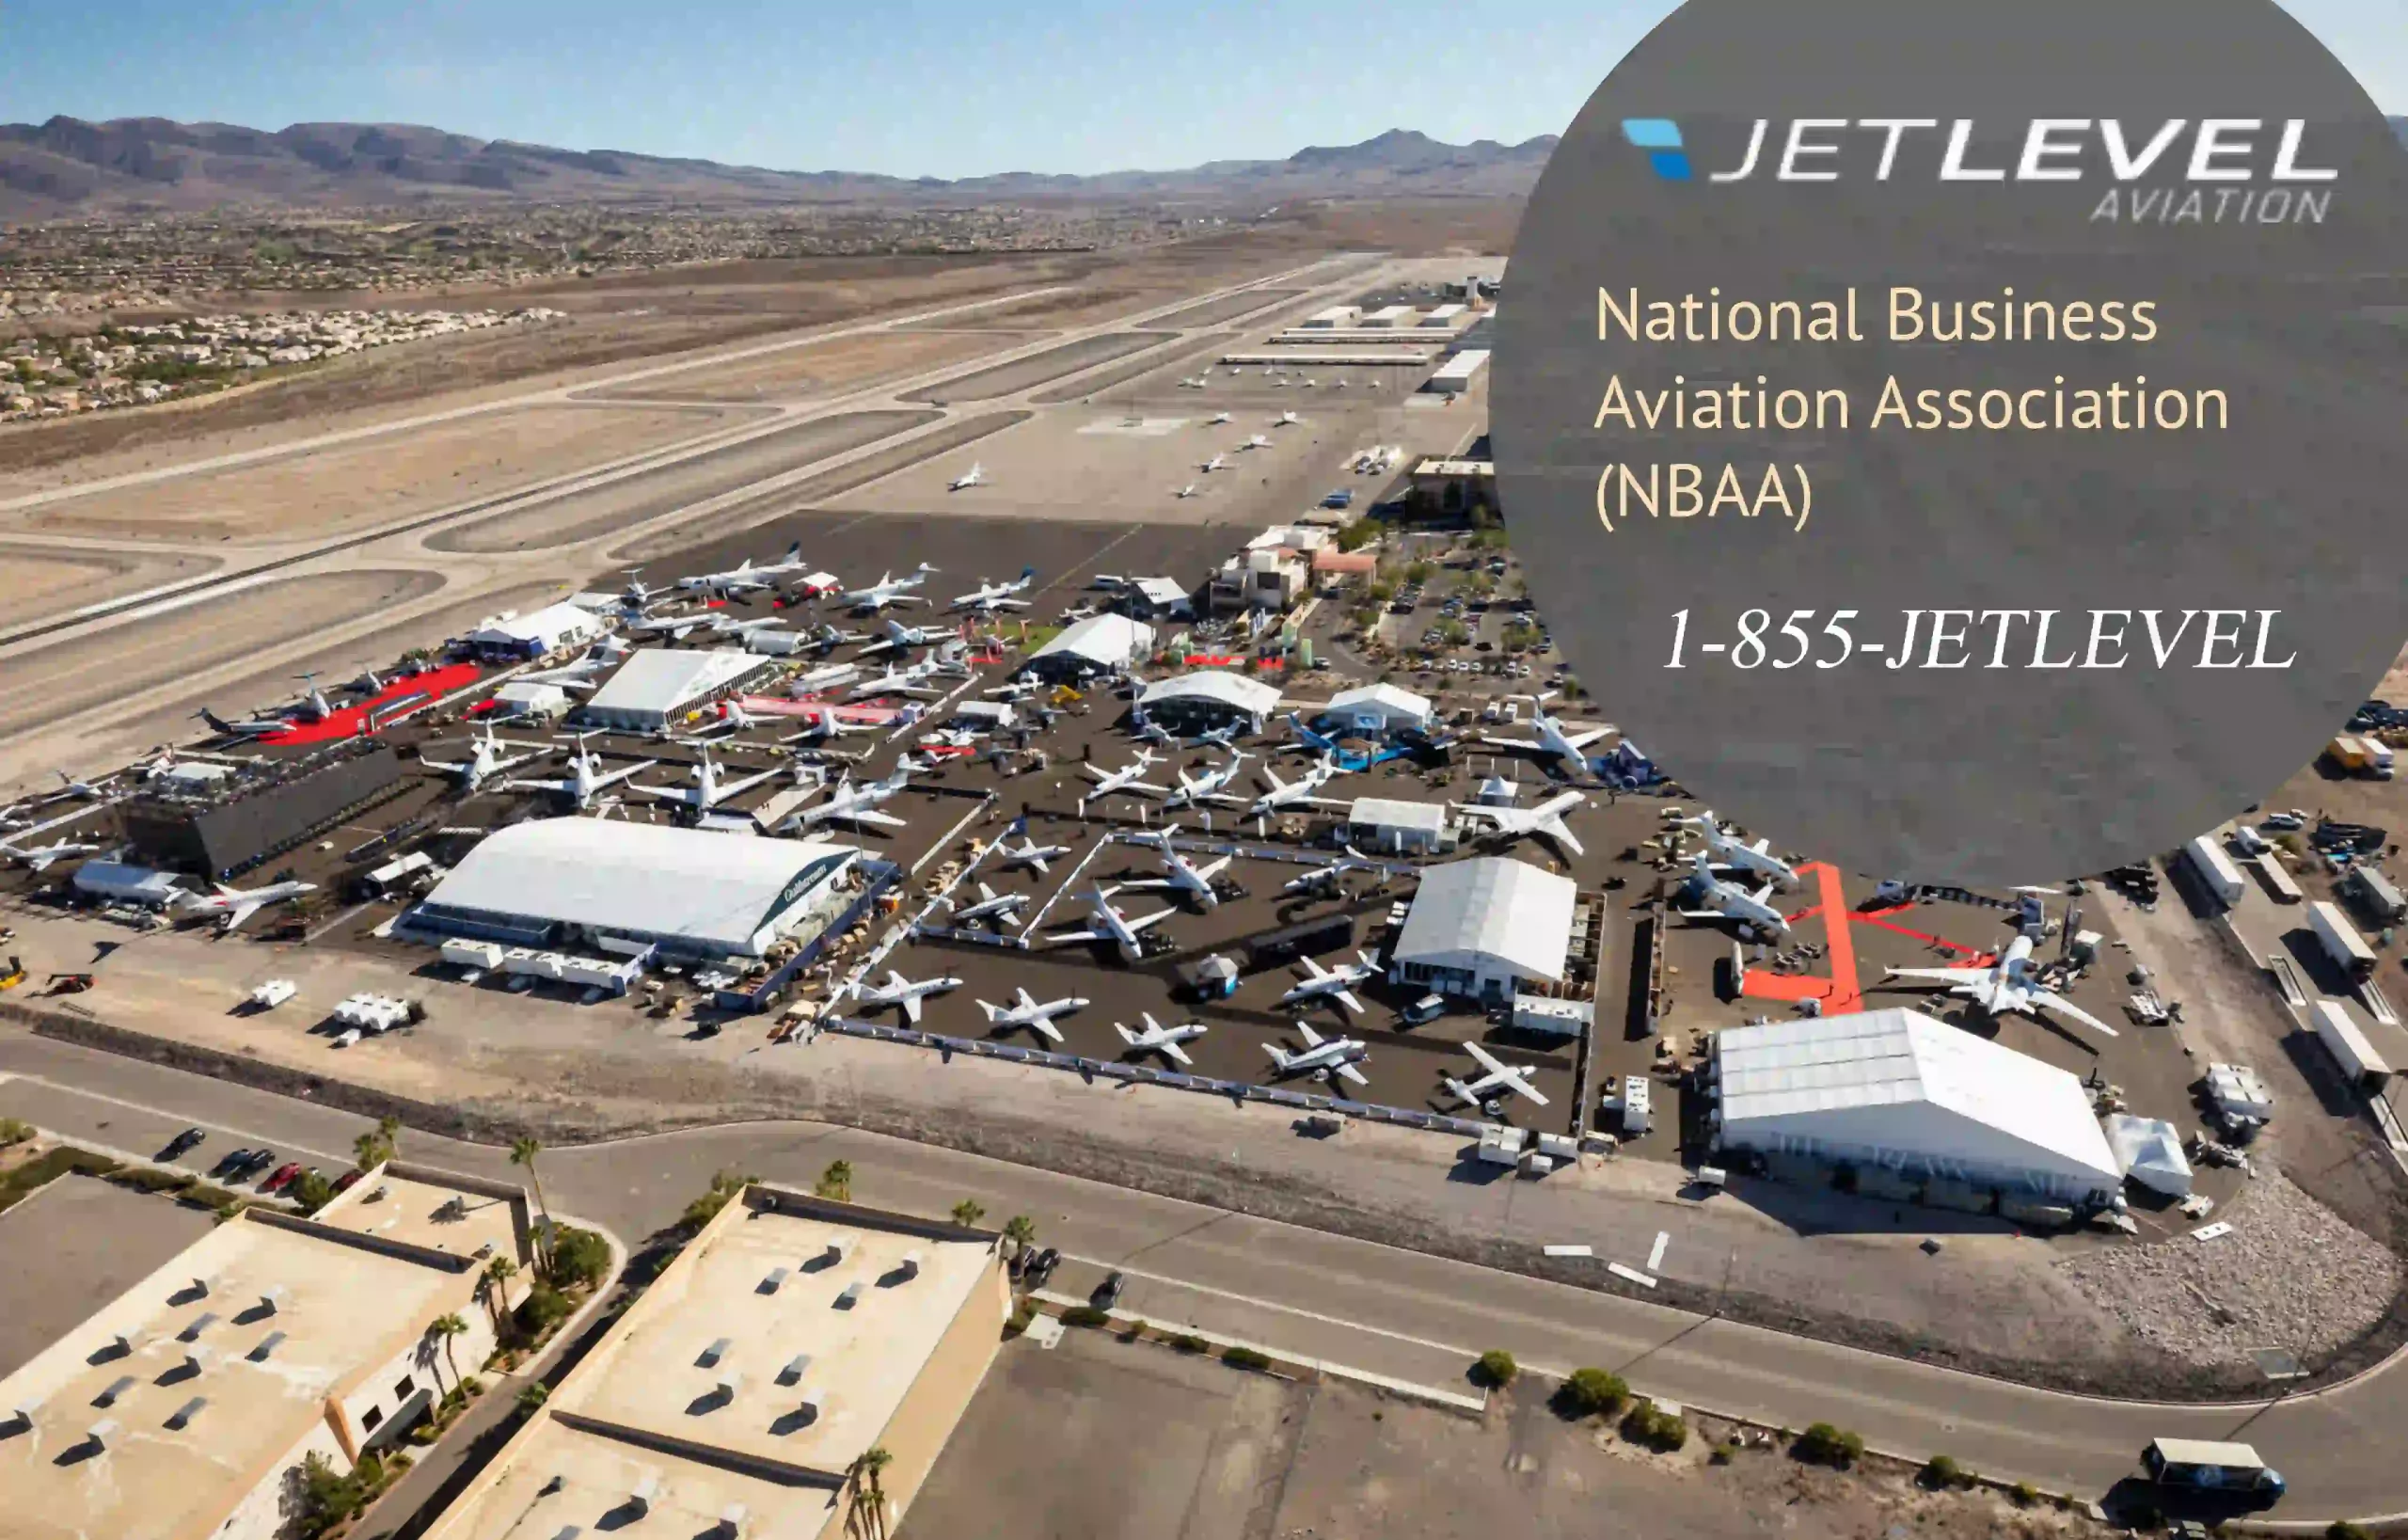 National Business Aviation Association (NBAA)